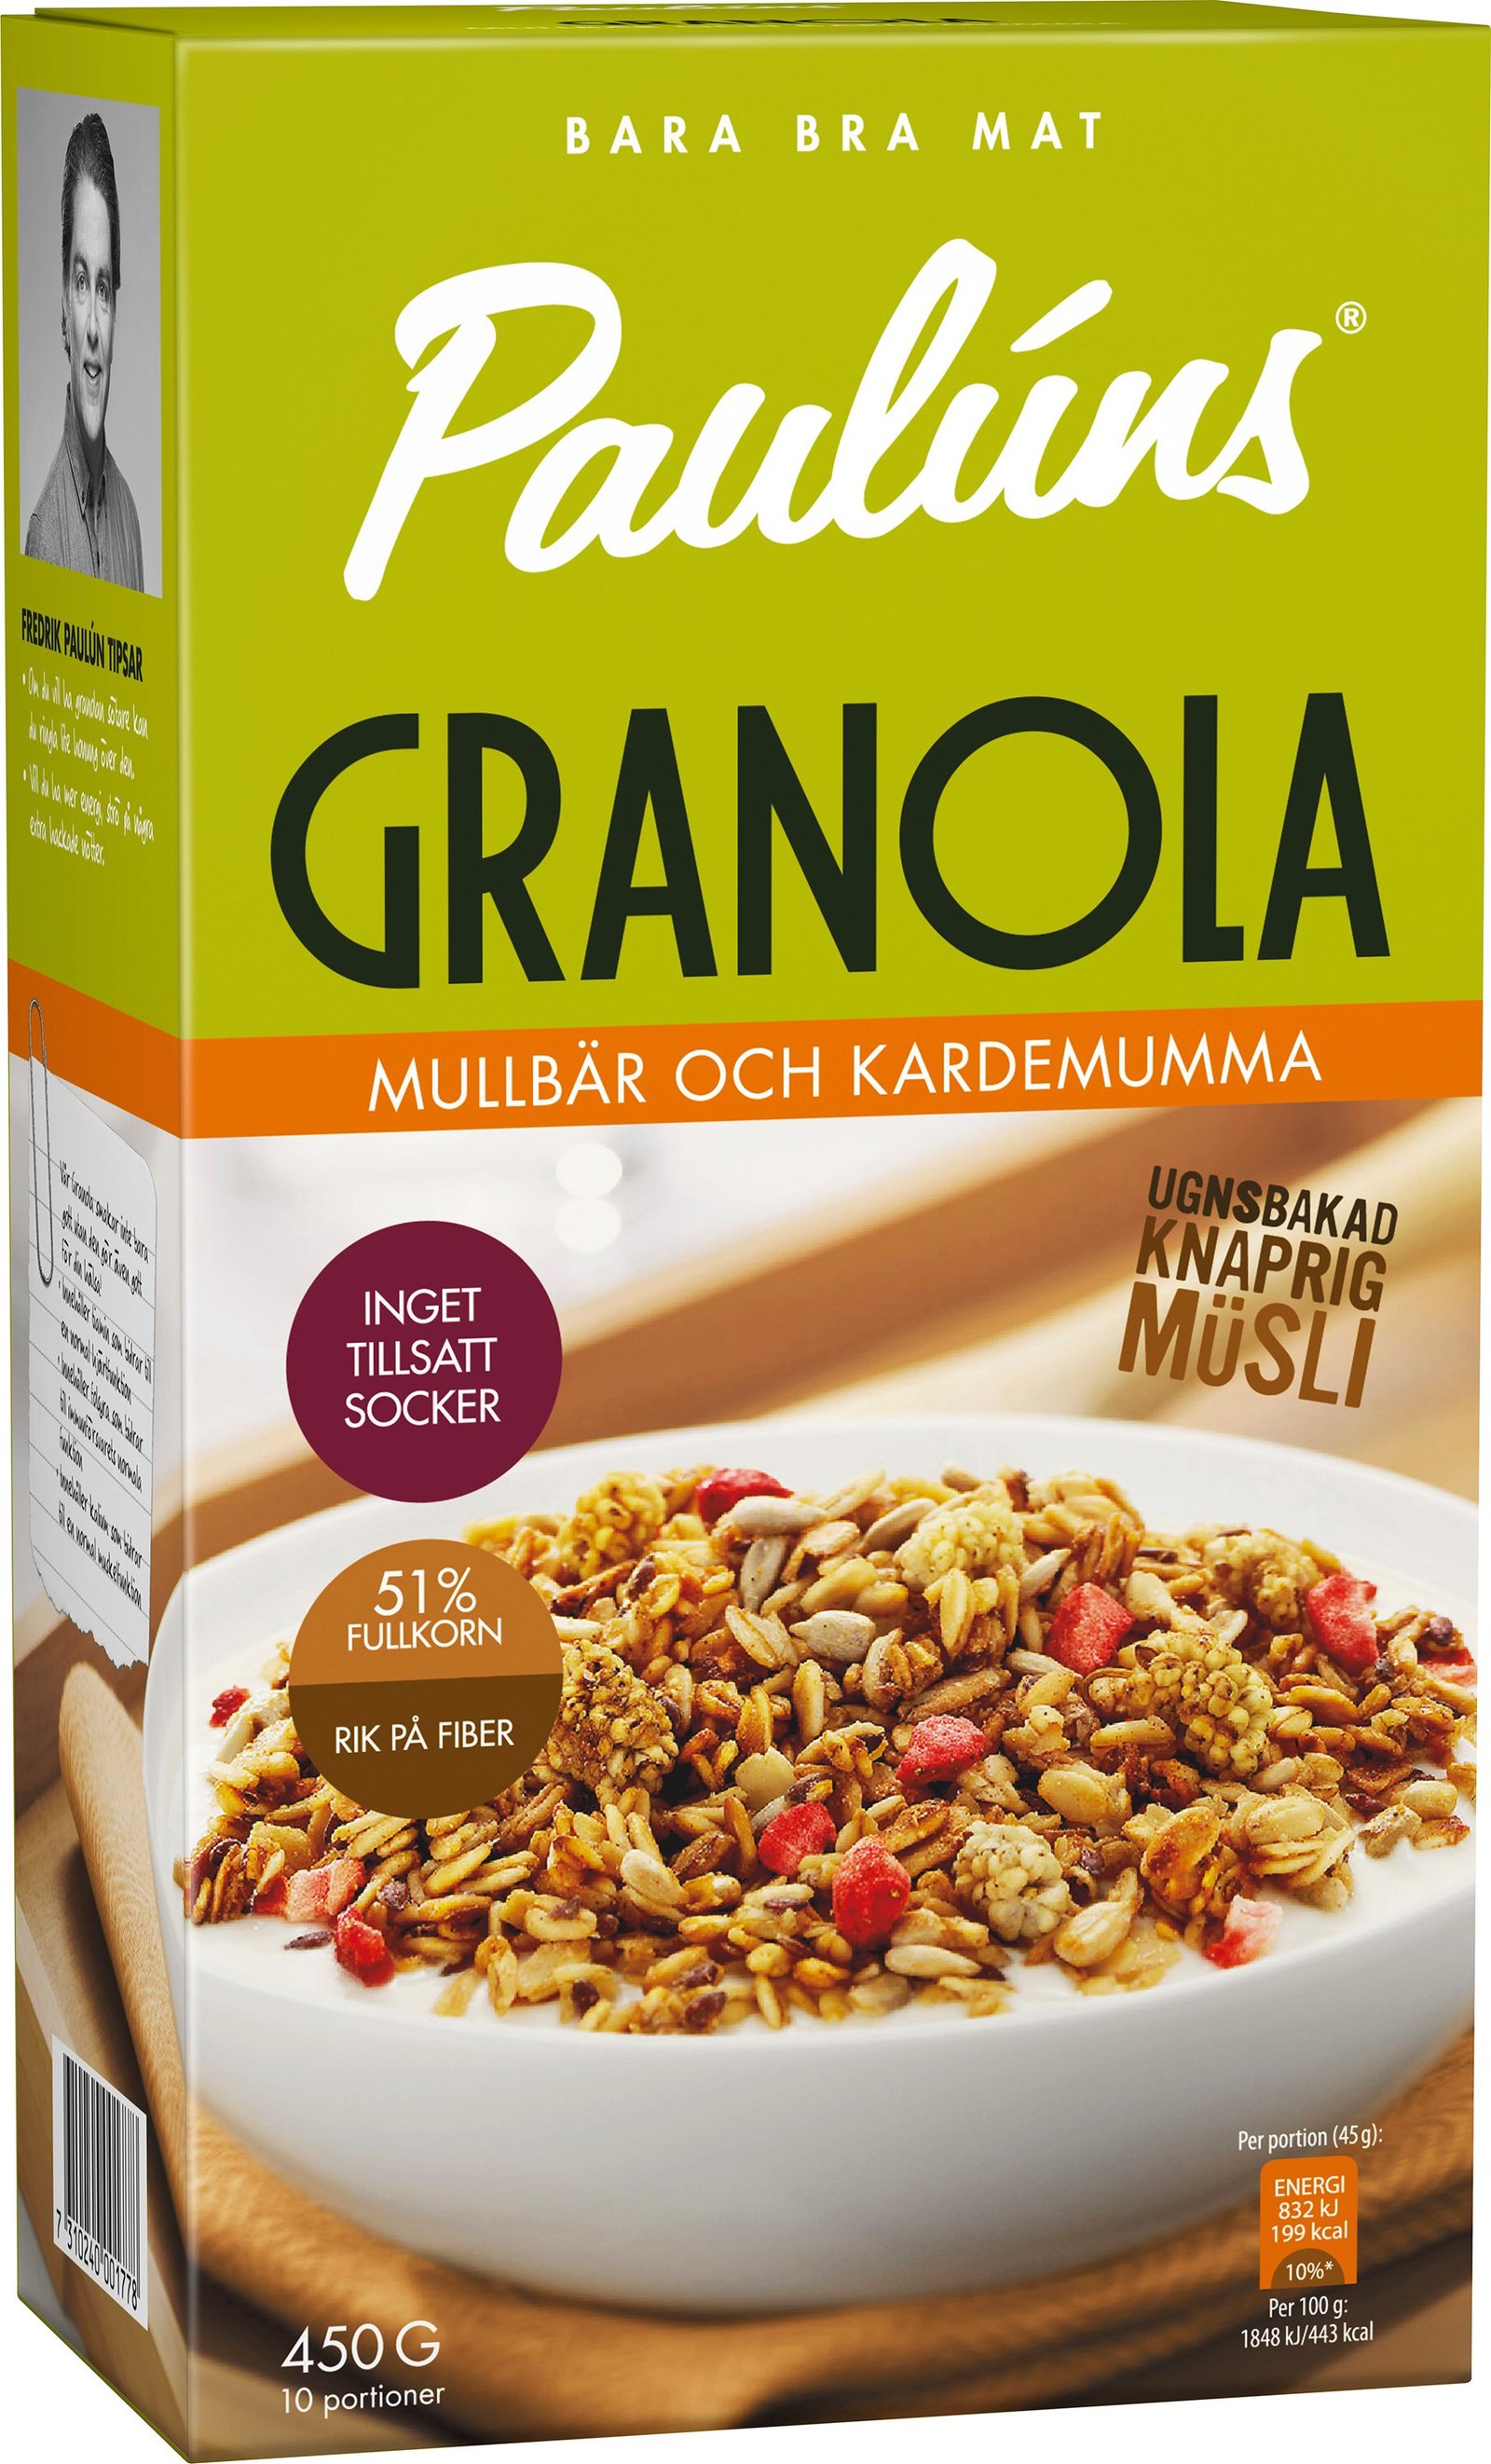 Paulúns Granola Mullbär Kardemumma 450g